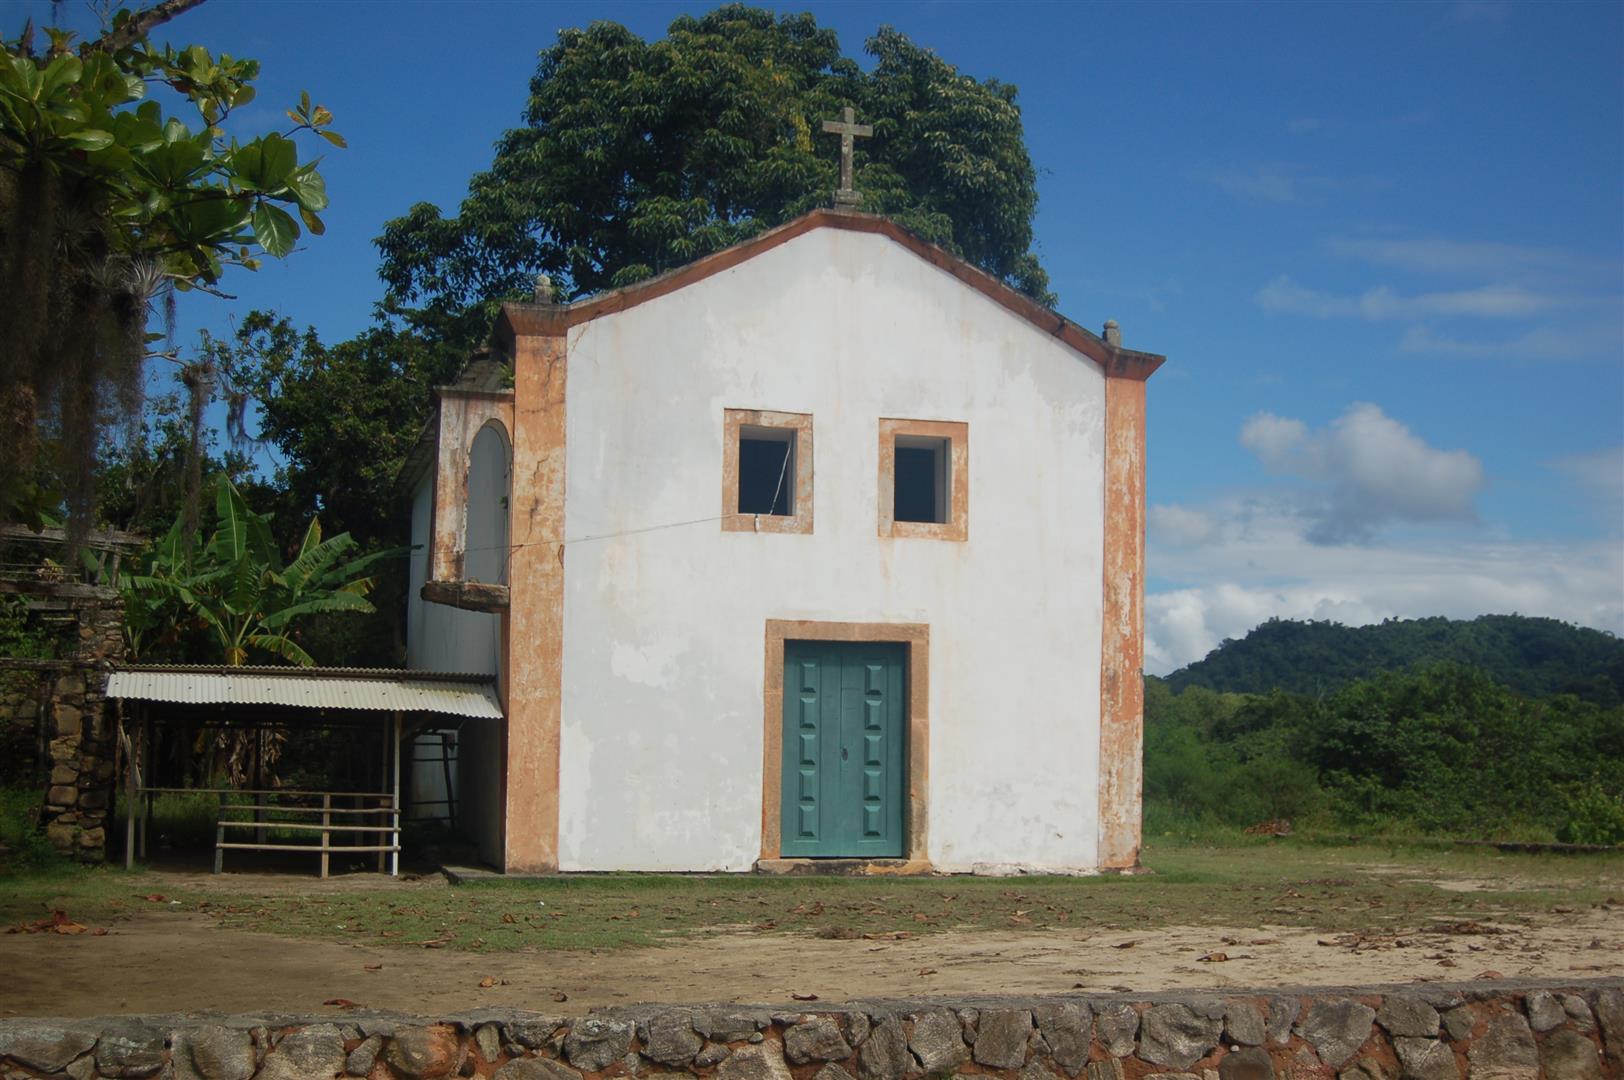 Igreja Nossa Senhora da Conceição - Paraty-Mirim - RJ